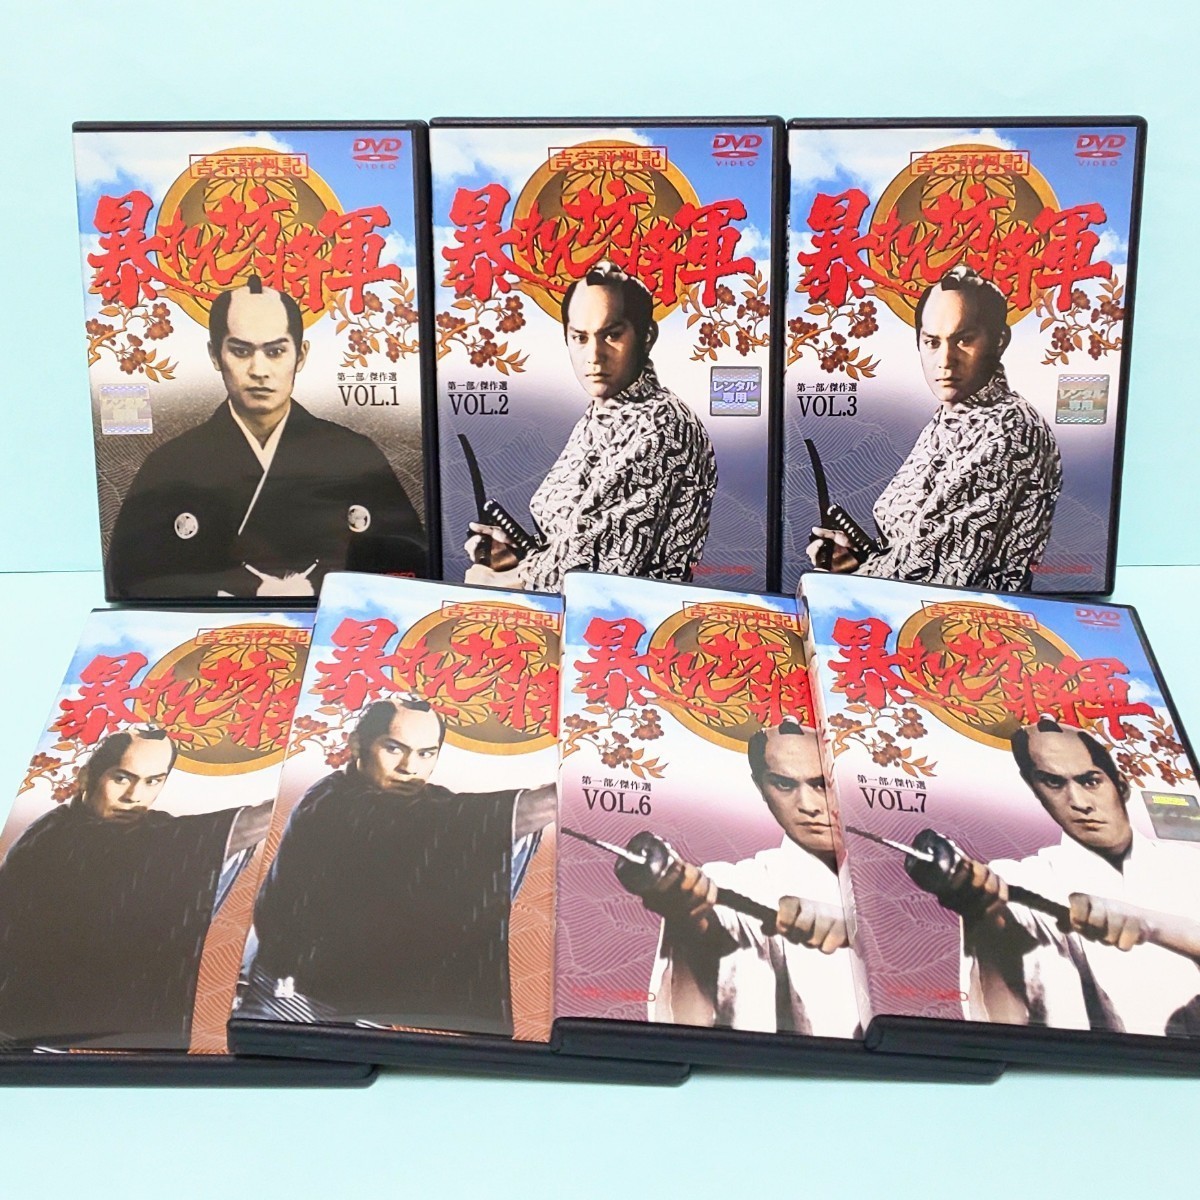 吉宗評判記 暴れん坊将軍 第一部 傑作選 レンタル版 DVD 全巻 セット